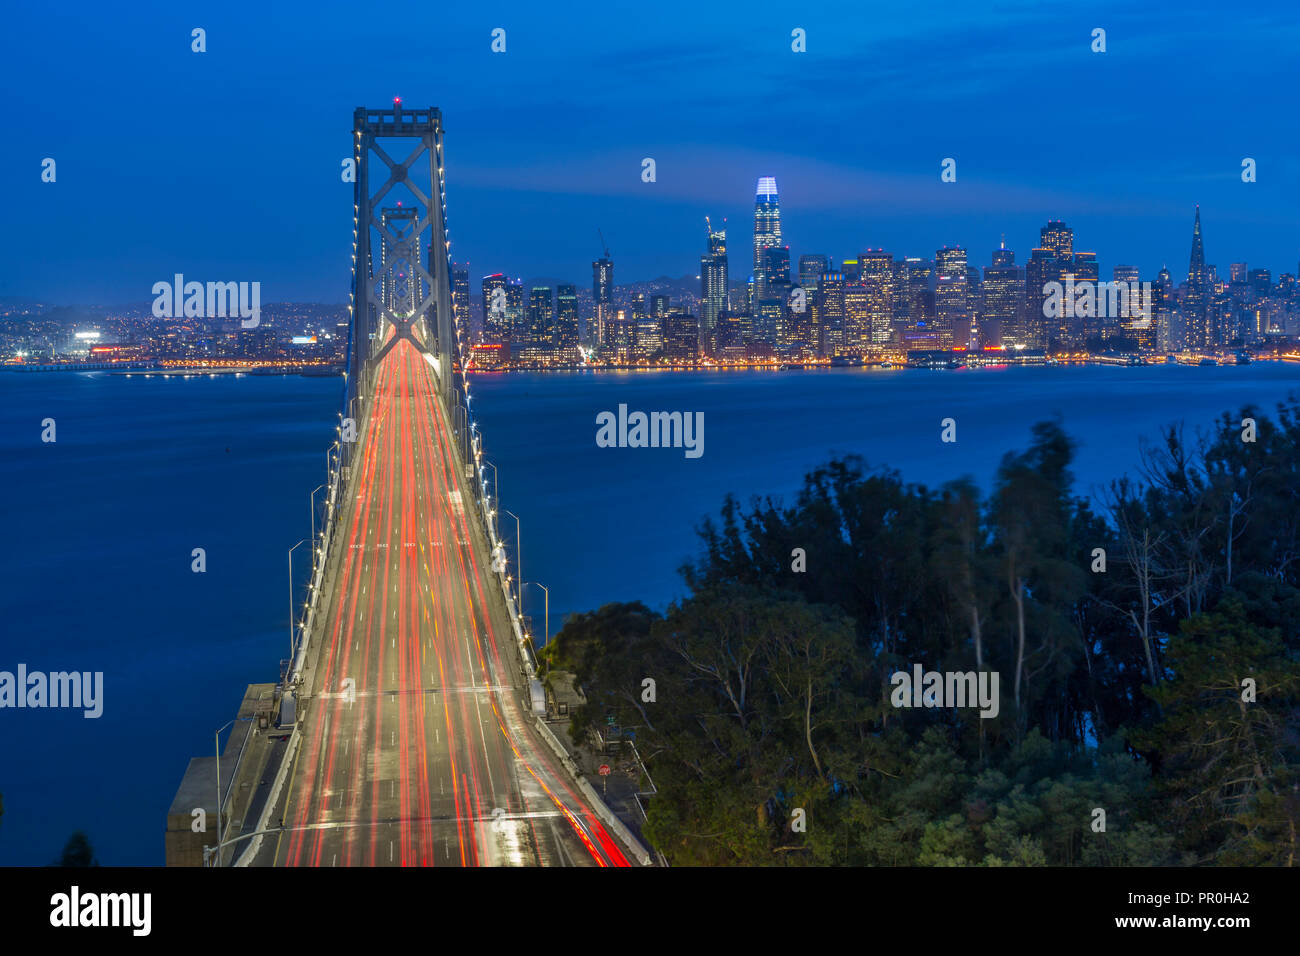 Vue d'horizon de San Francisco et Oakland Bay Bridge à partir de l'île au trésor de nuit, San Francisco, Californie, États-Unis d'Amérique, Amérique du Nord Banque D'Images